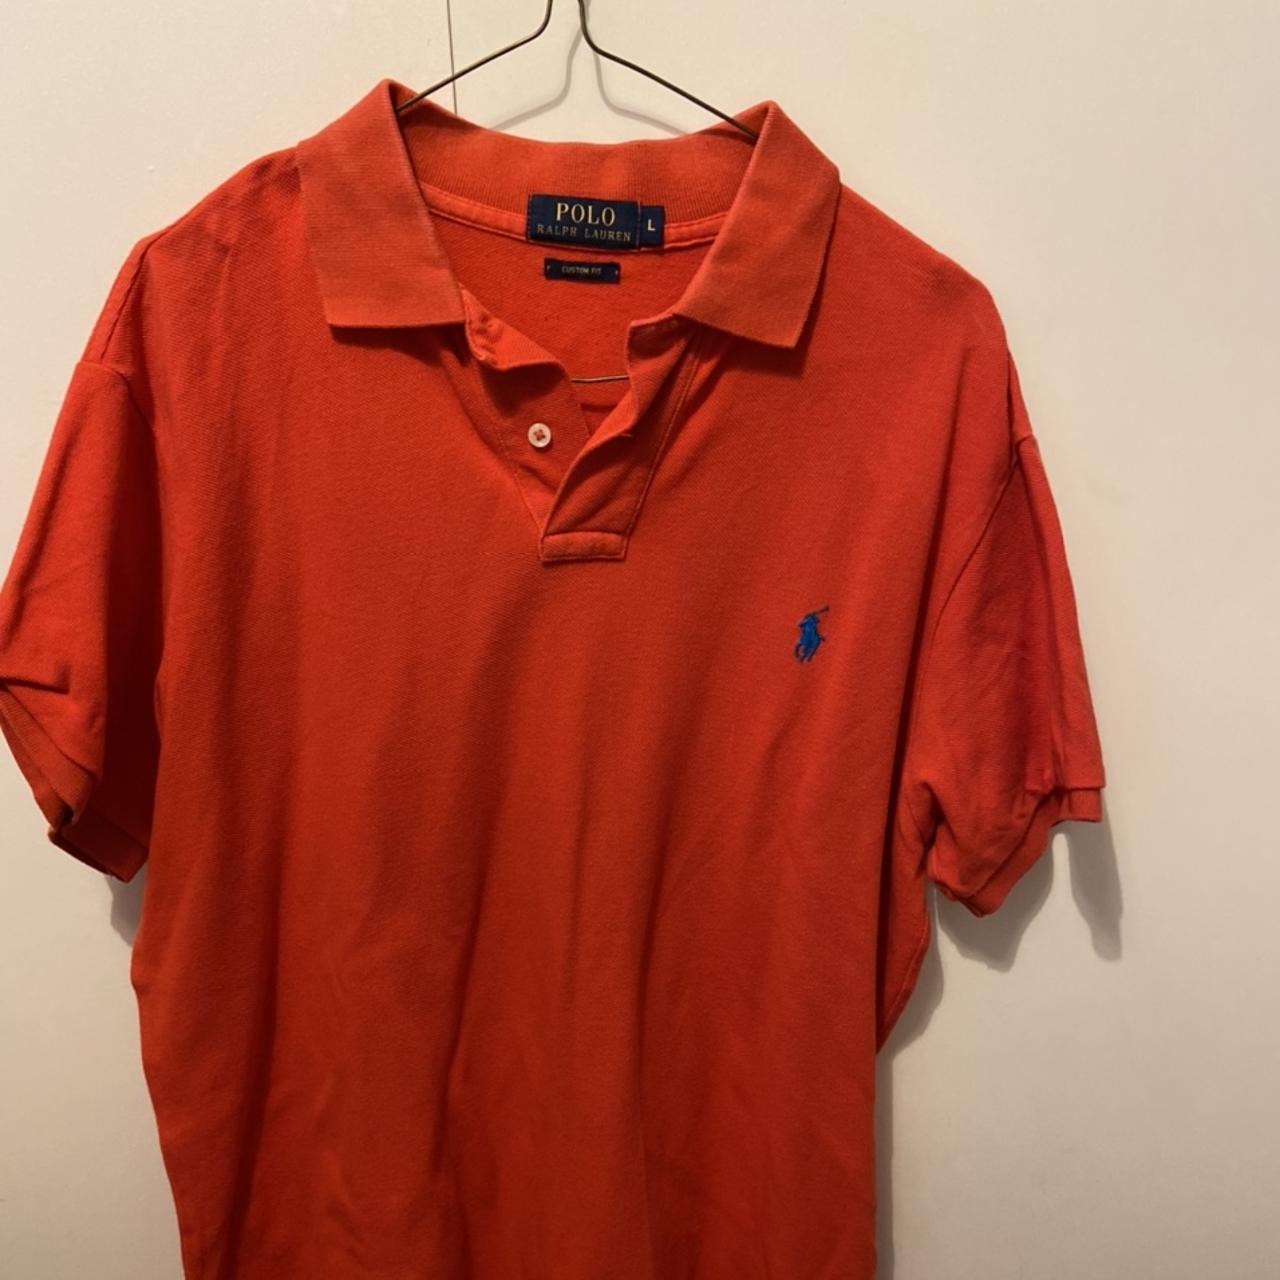 Men’s red Ralph Lauren polo shirt, worn in good... - Depop